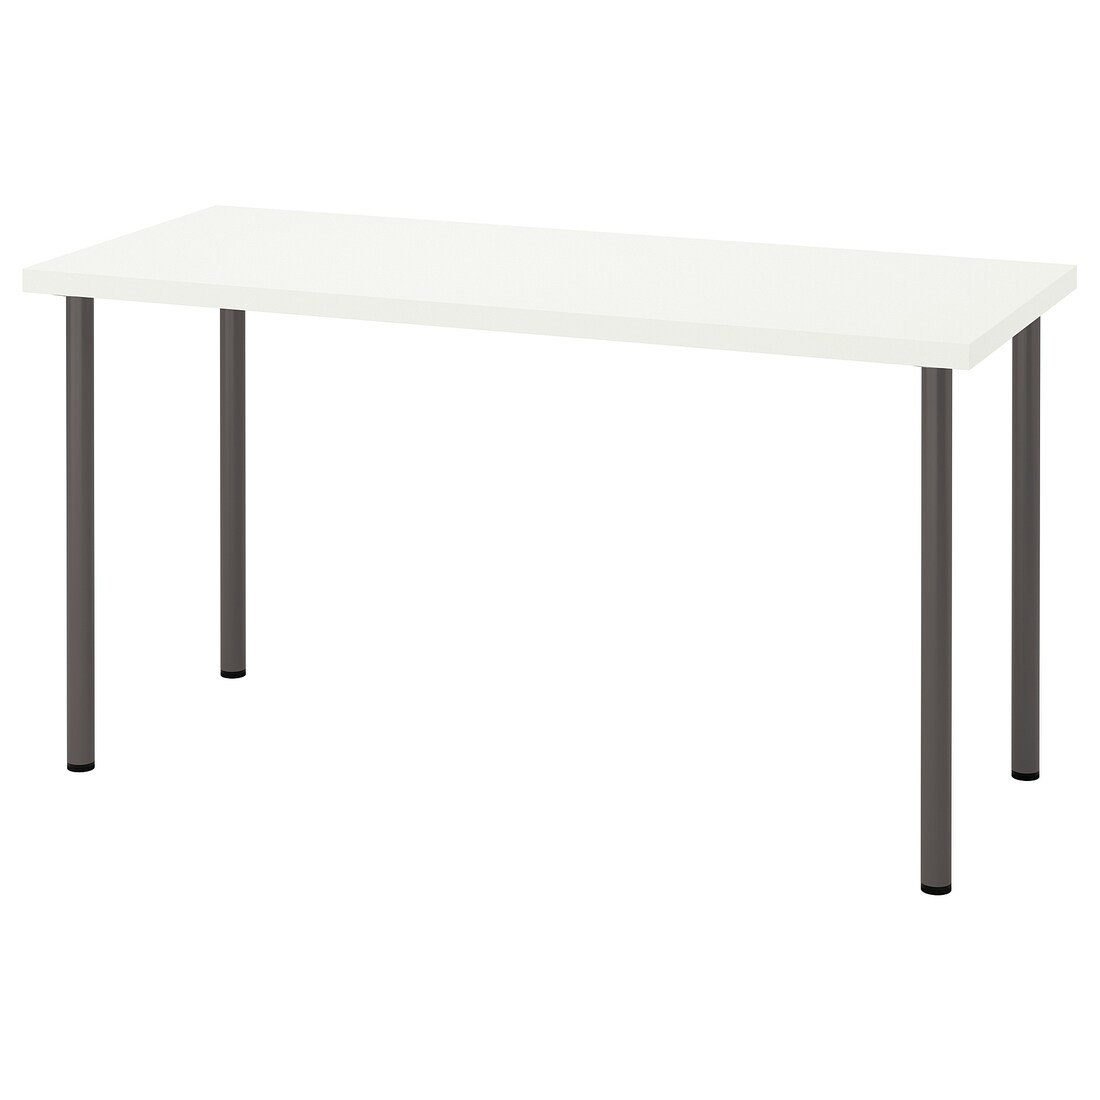 IKEA LAGKAPTEN ЛАГКАПТЕН / ADILS АДИЛЬС Письменный стол, белый / темно-серый, 140x60 см 29417159 294.171.59